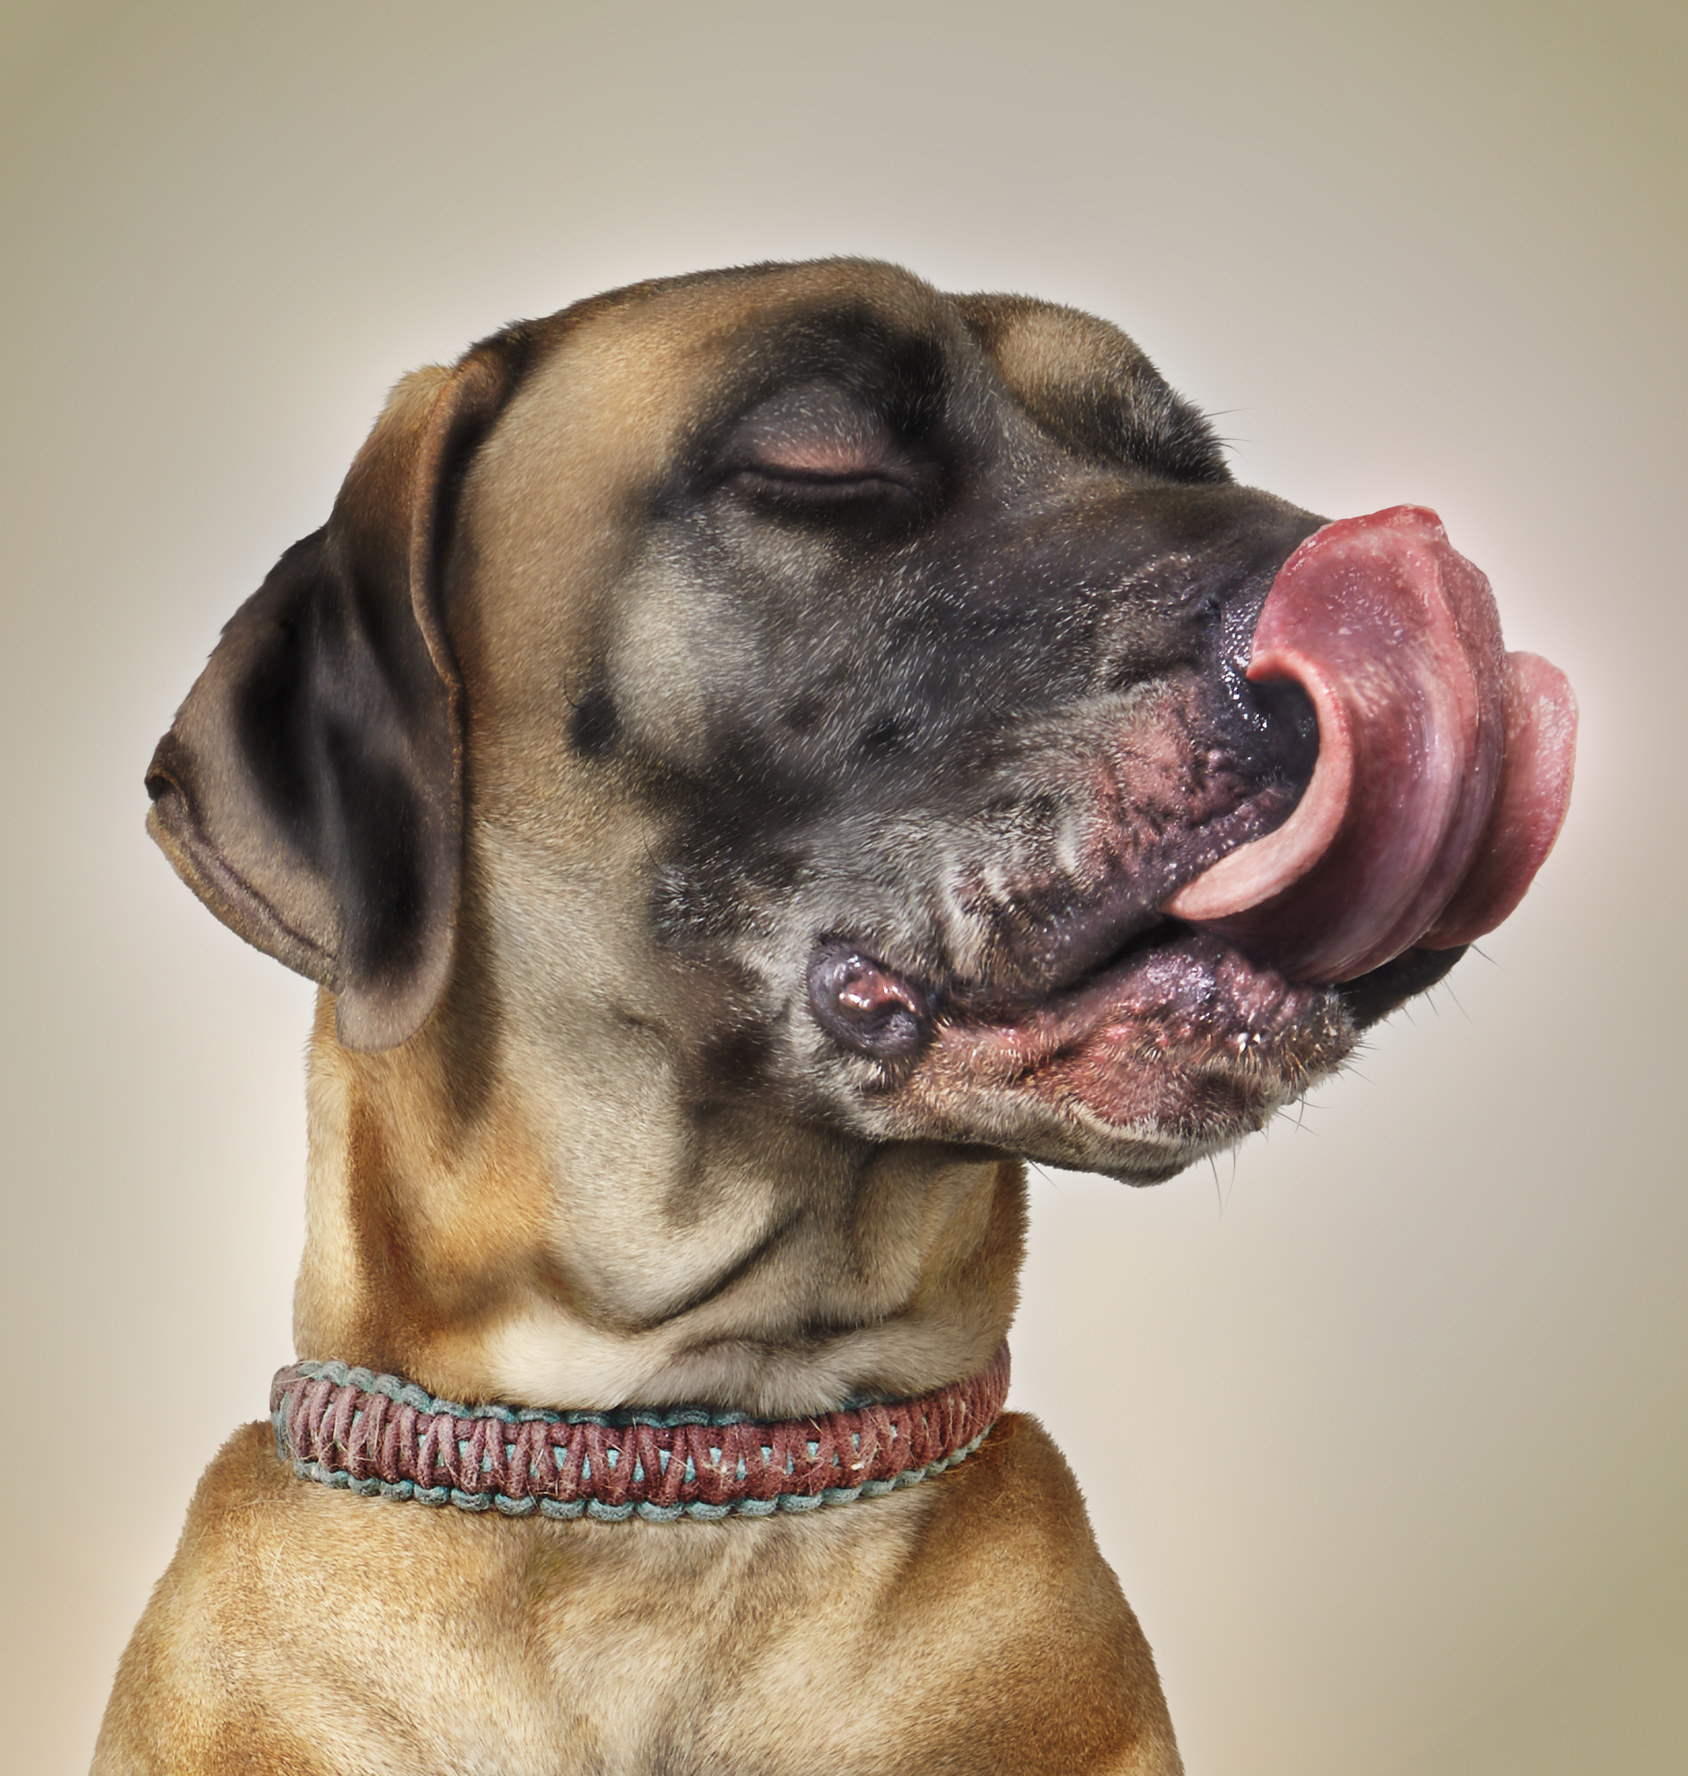 A dog licking its chops